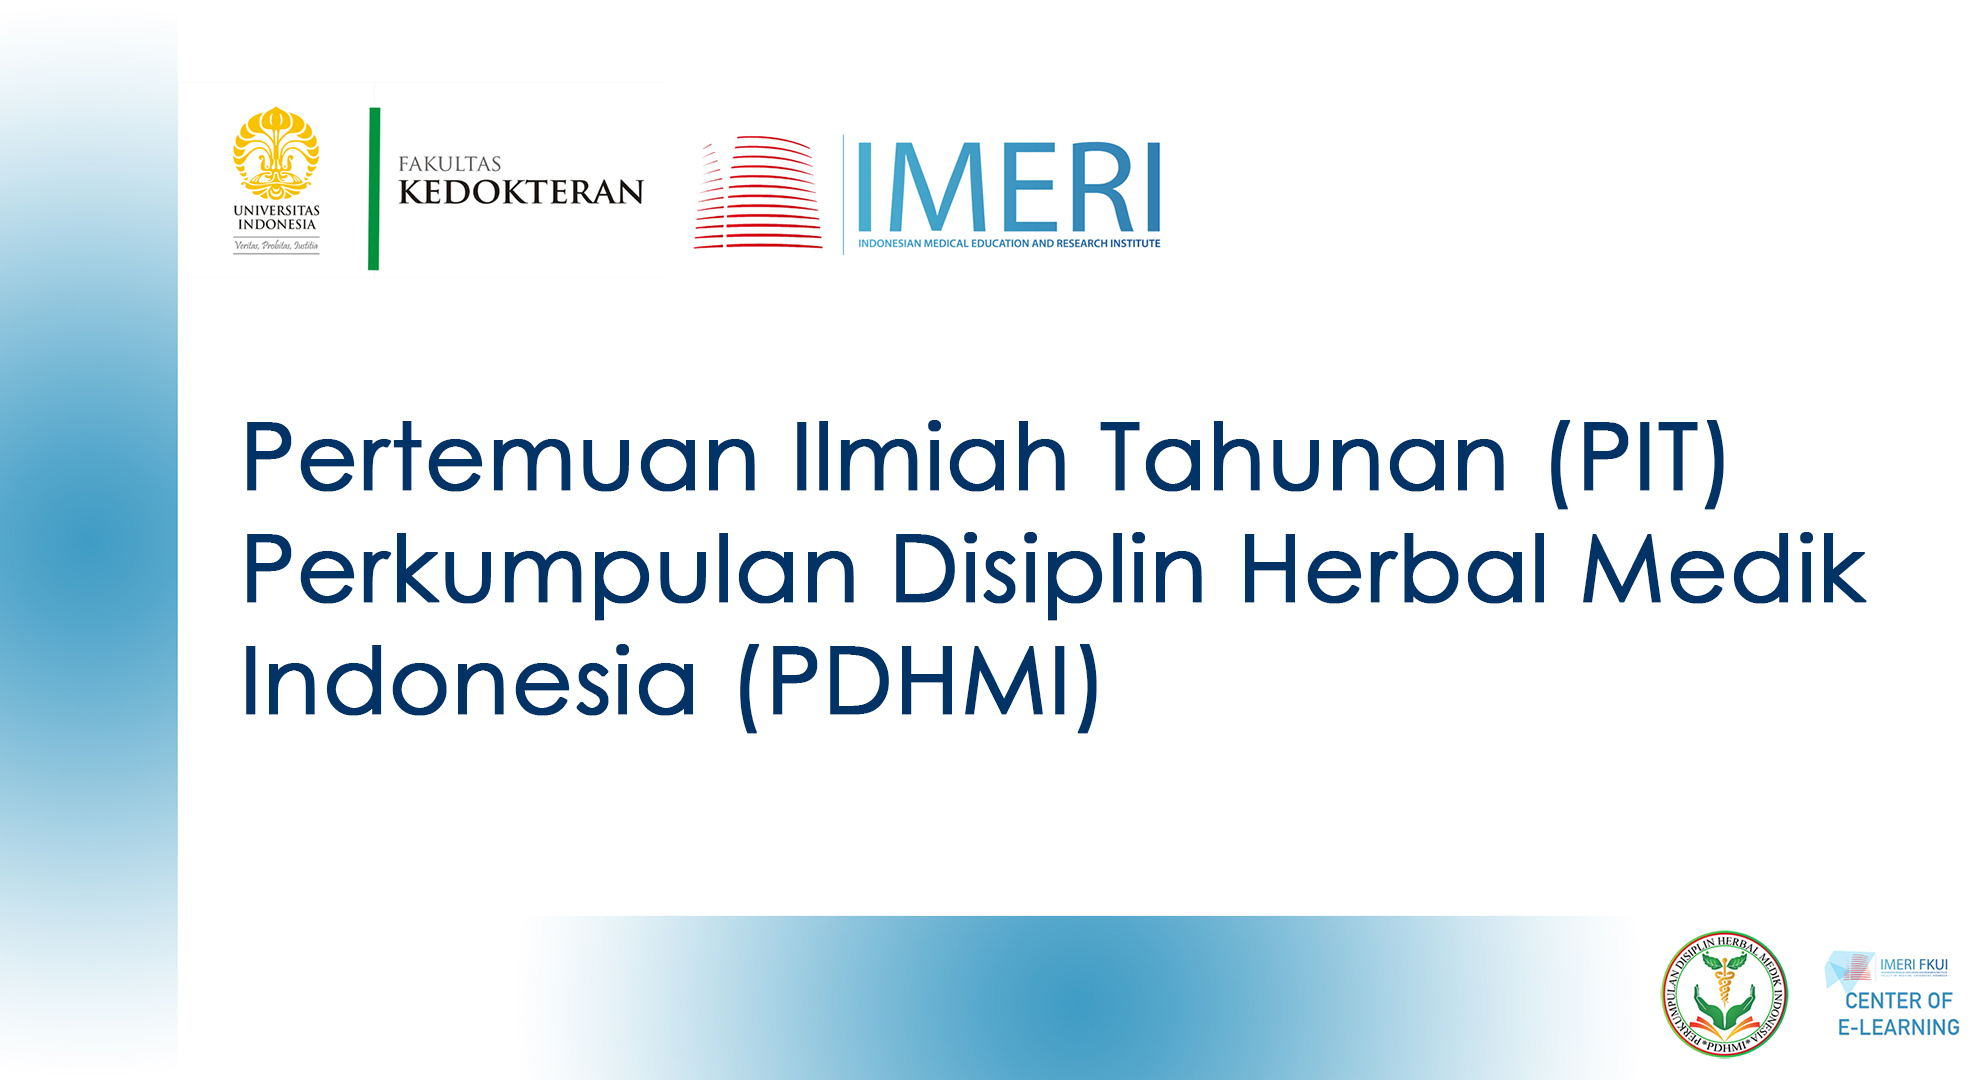 Pertemuan Ilmiah Tahunan (PIT) Perkumpulan Disiplin Herbal Medik Indonesia (PDHMI)